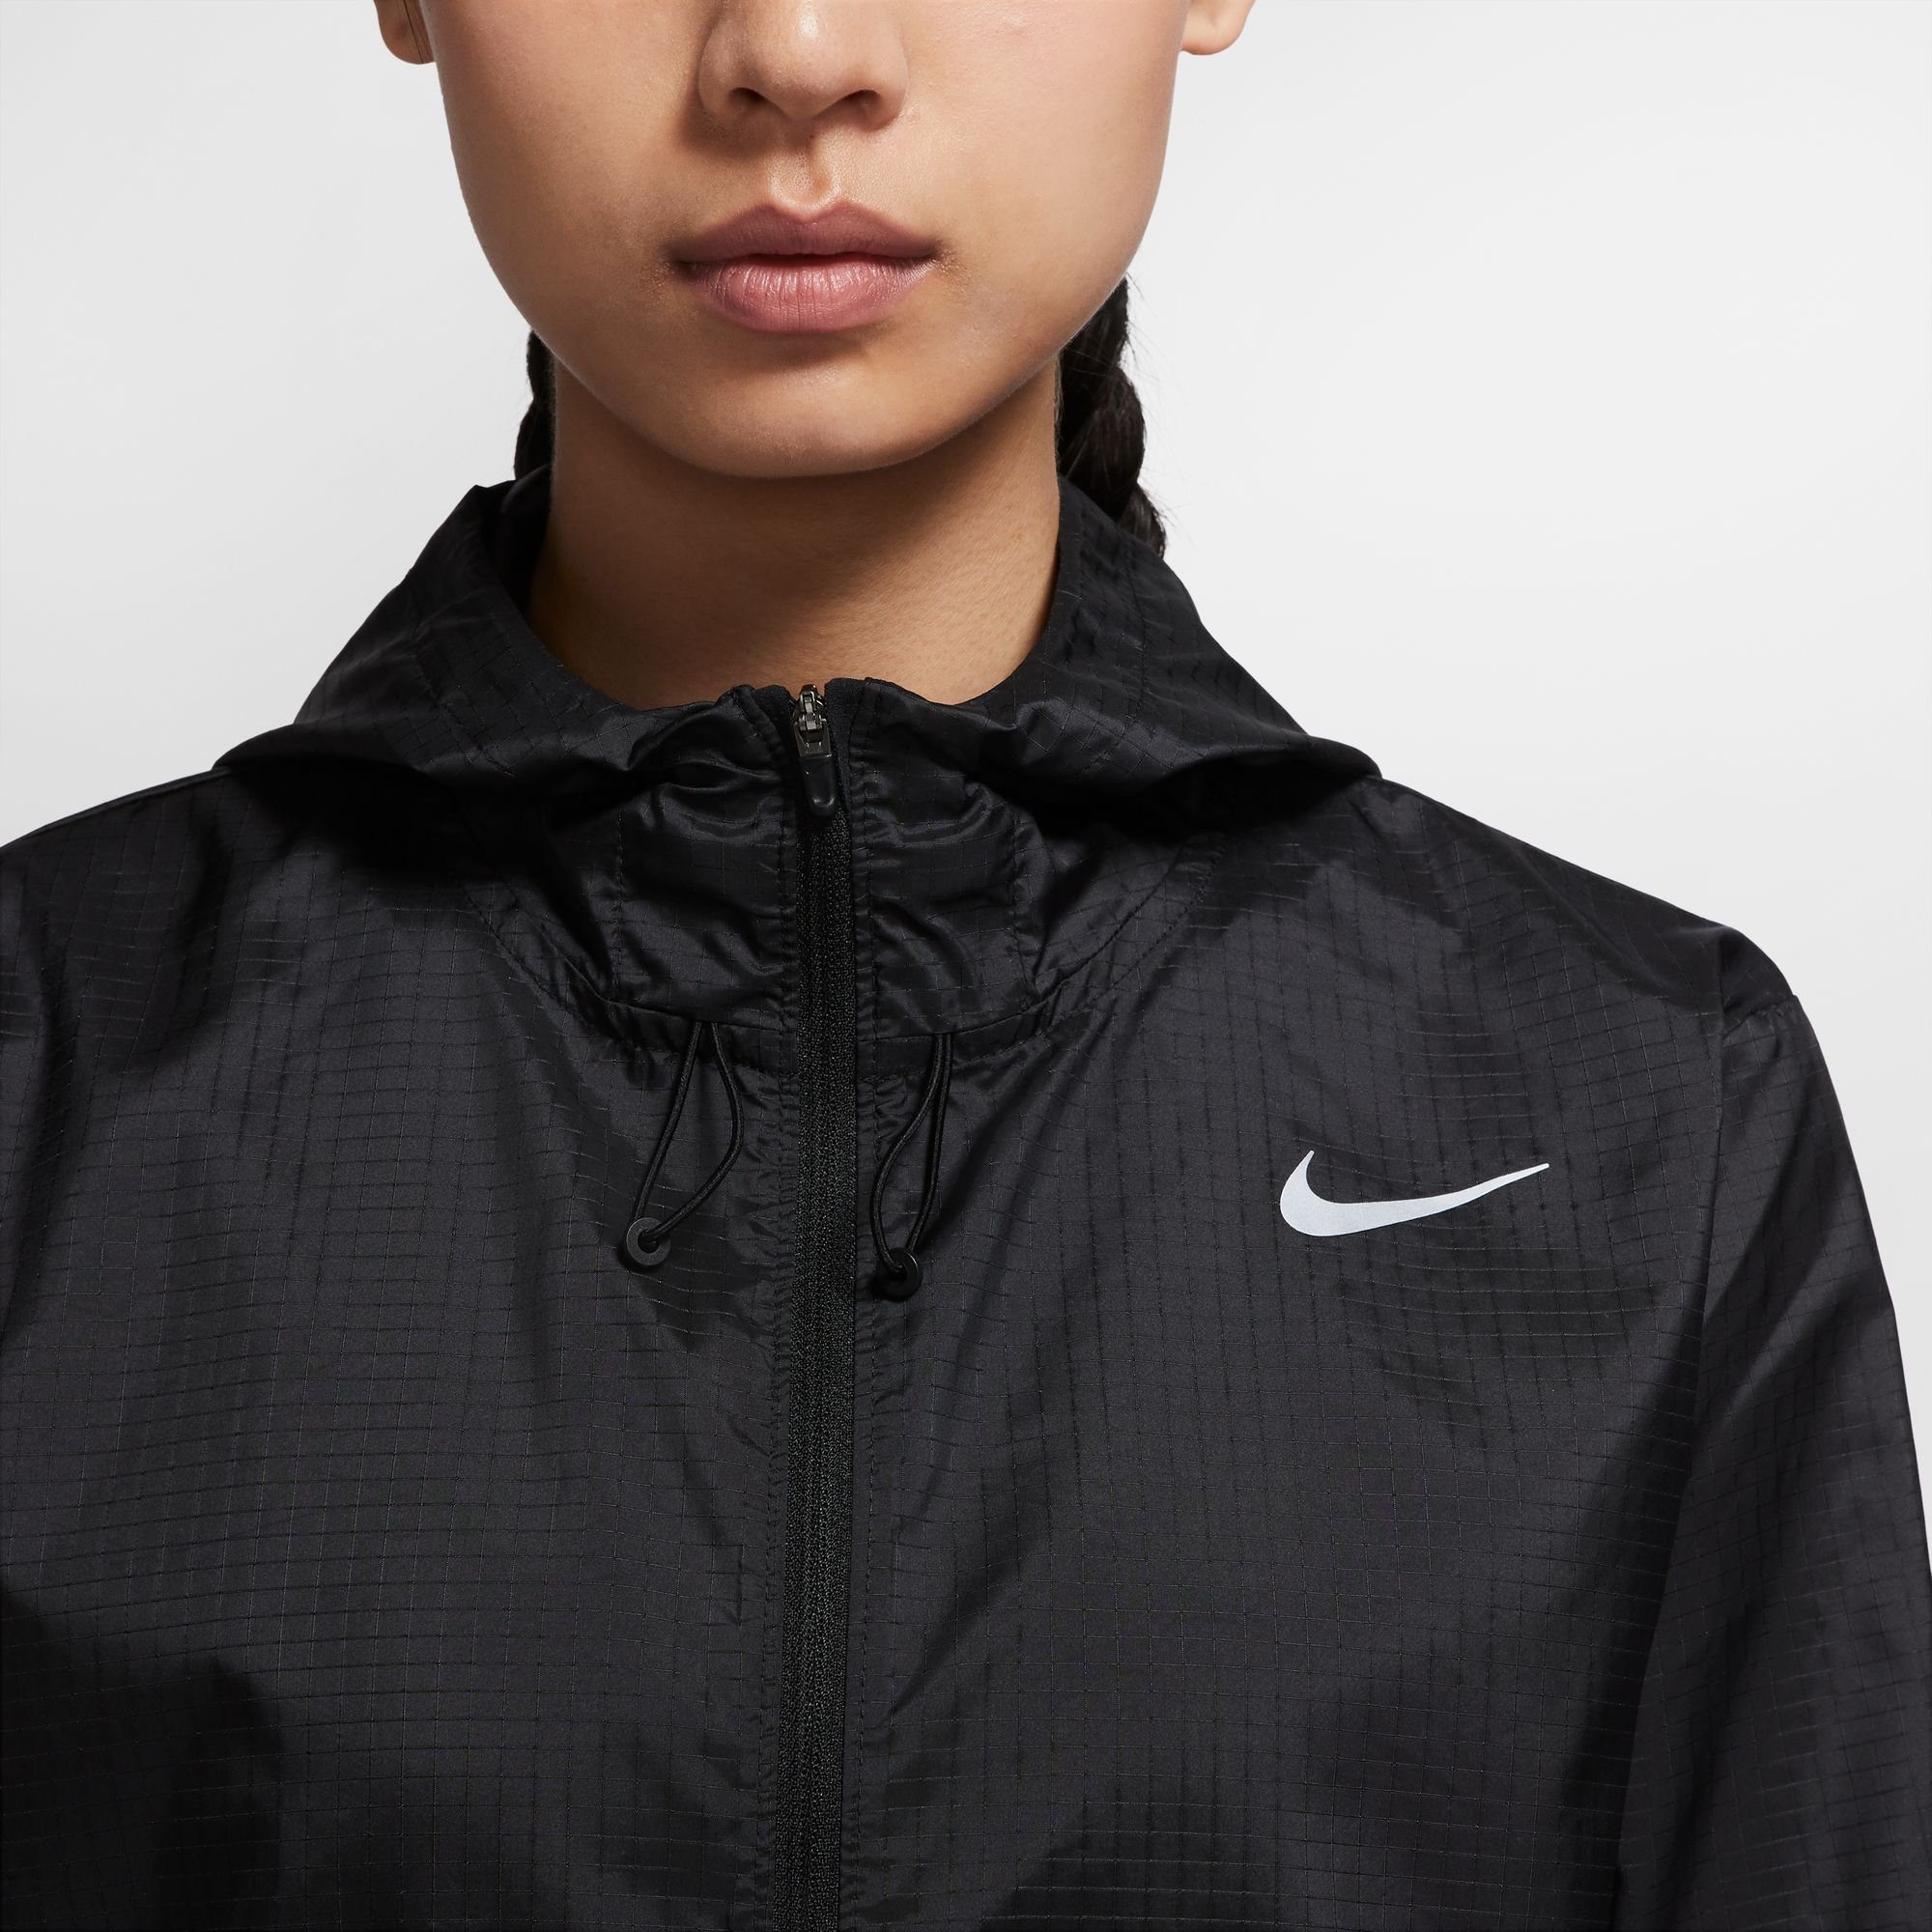 Nike Laufjacke Essential Jacket schwarz Running Women's